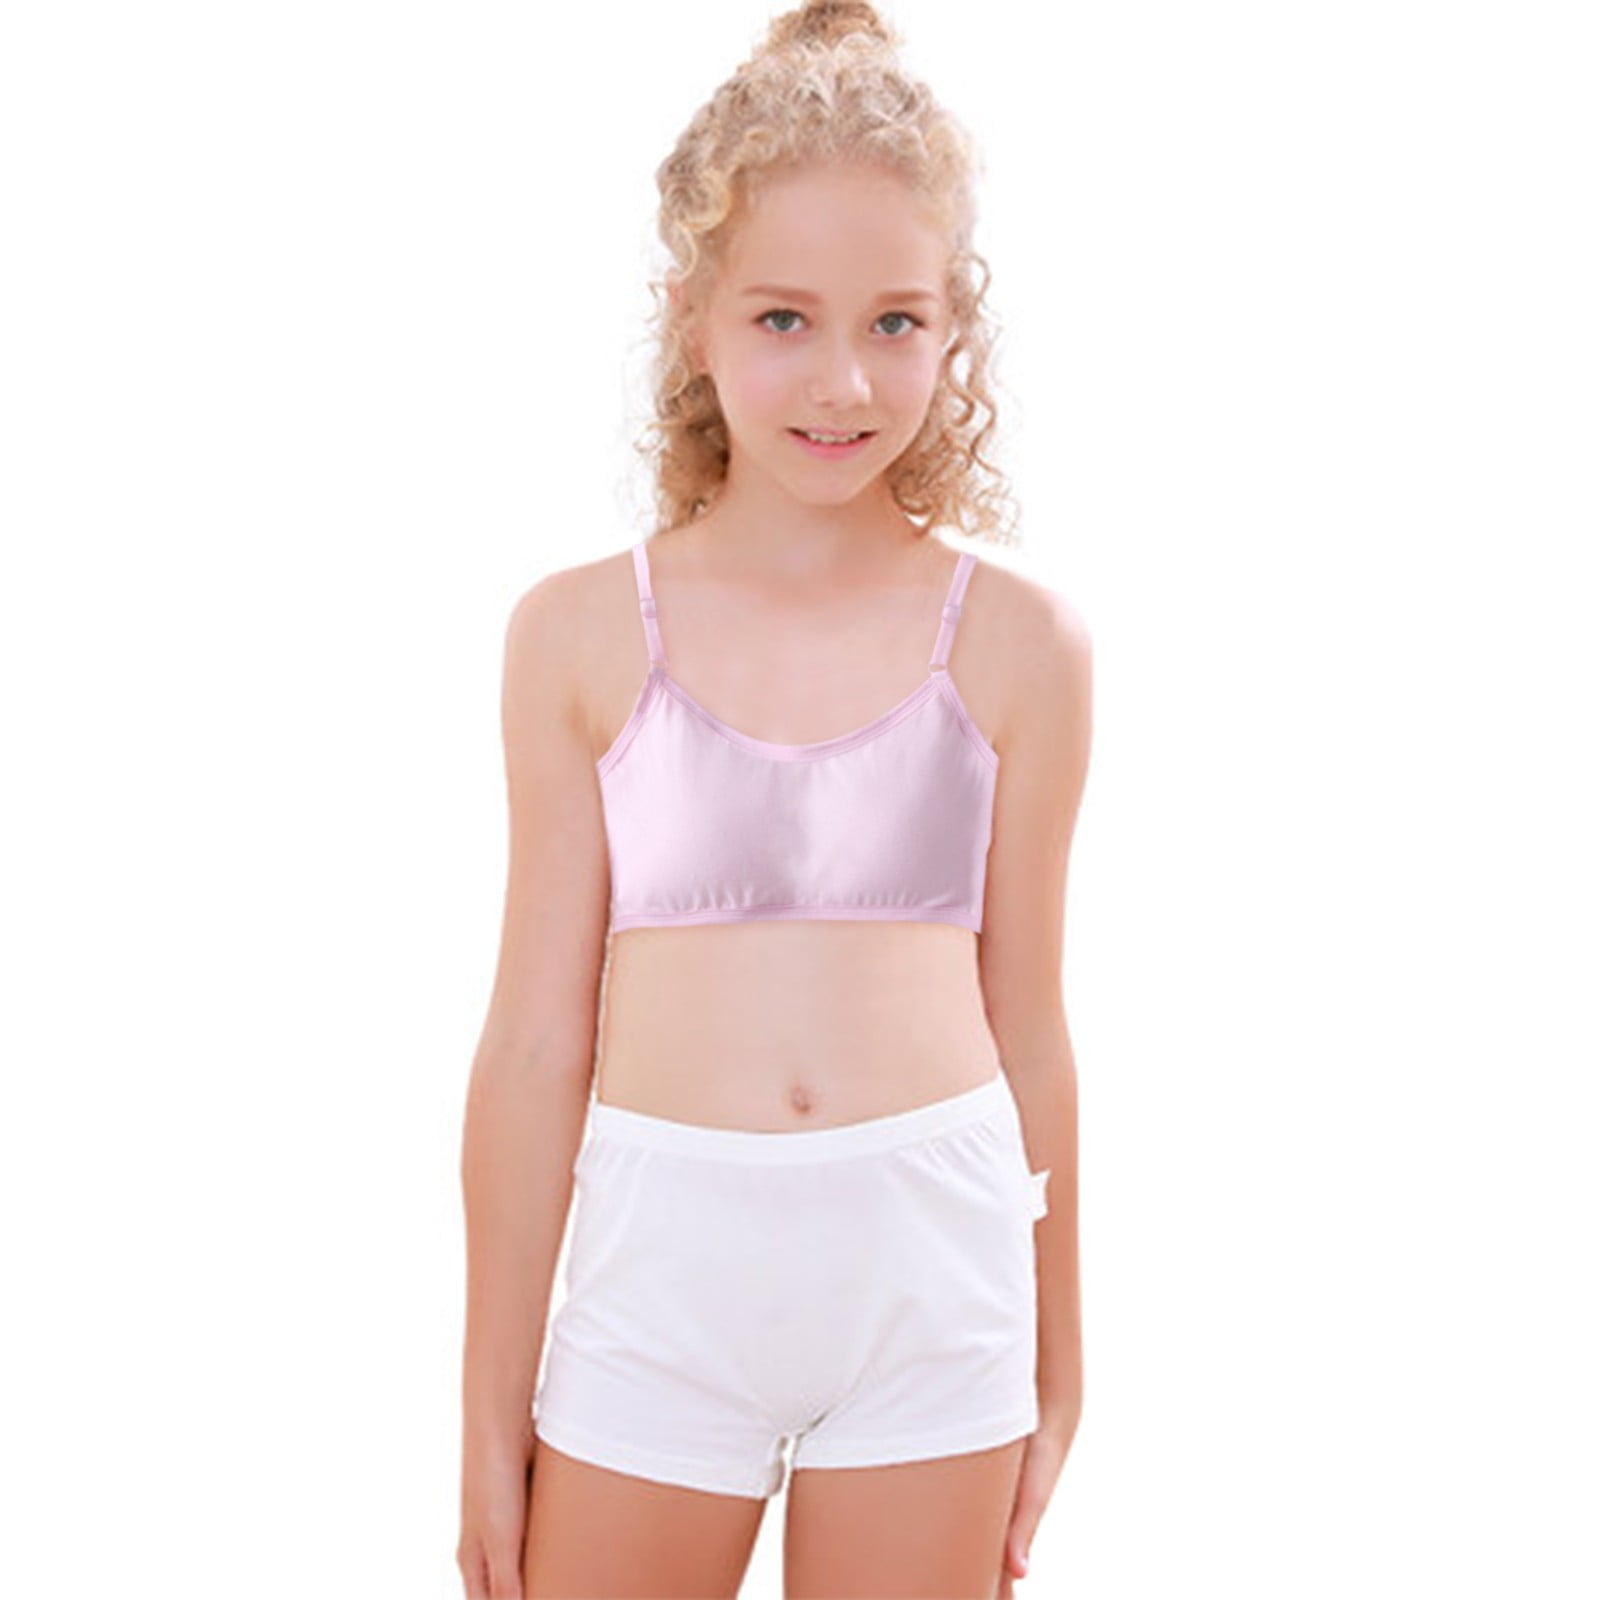 Ketyyh-chn99 Girls Underwear Girl Bra Training Bra Teen Student Girls'  Seamless Cami Bra White,10-12 Years